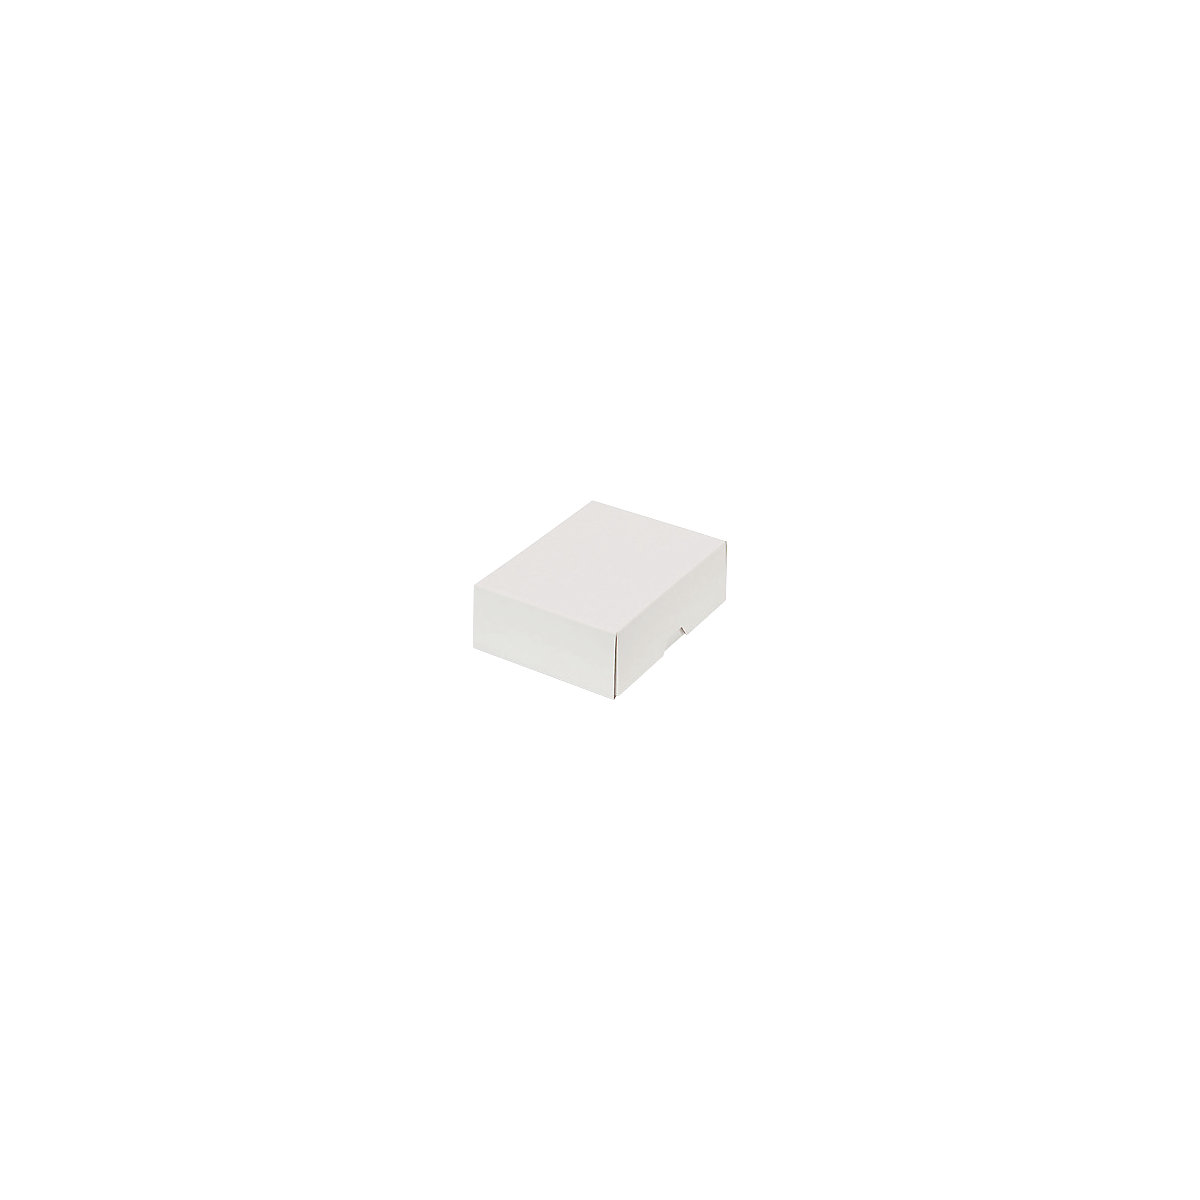 Stülpdeckelkarton, zweiteilig, Innenmaße 151 x 108 x 45 mm, A6, weiß, ab 50 Stk-44